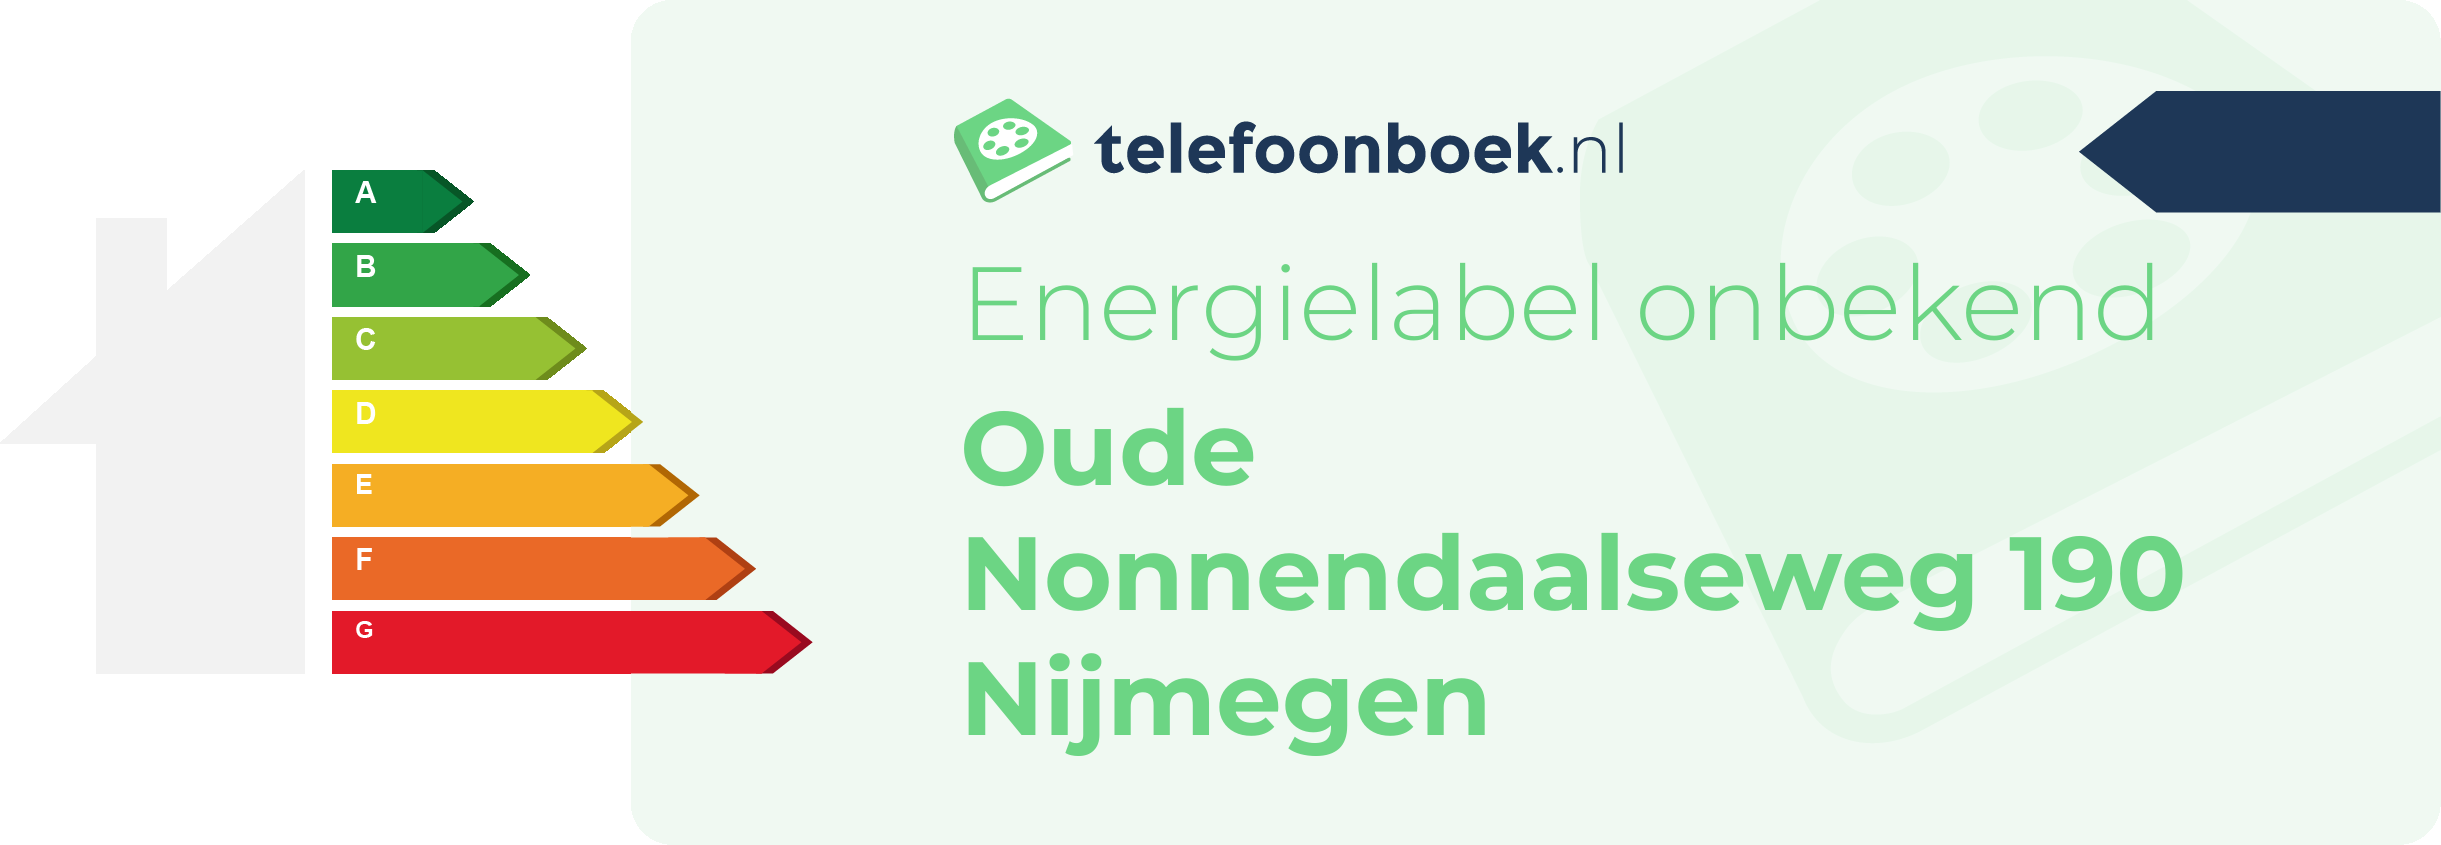 Energielabel Oude Nonnendaalseweg 190 Nijmegen